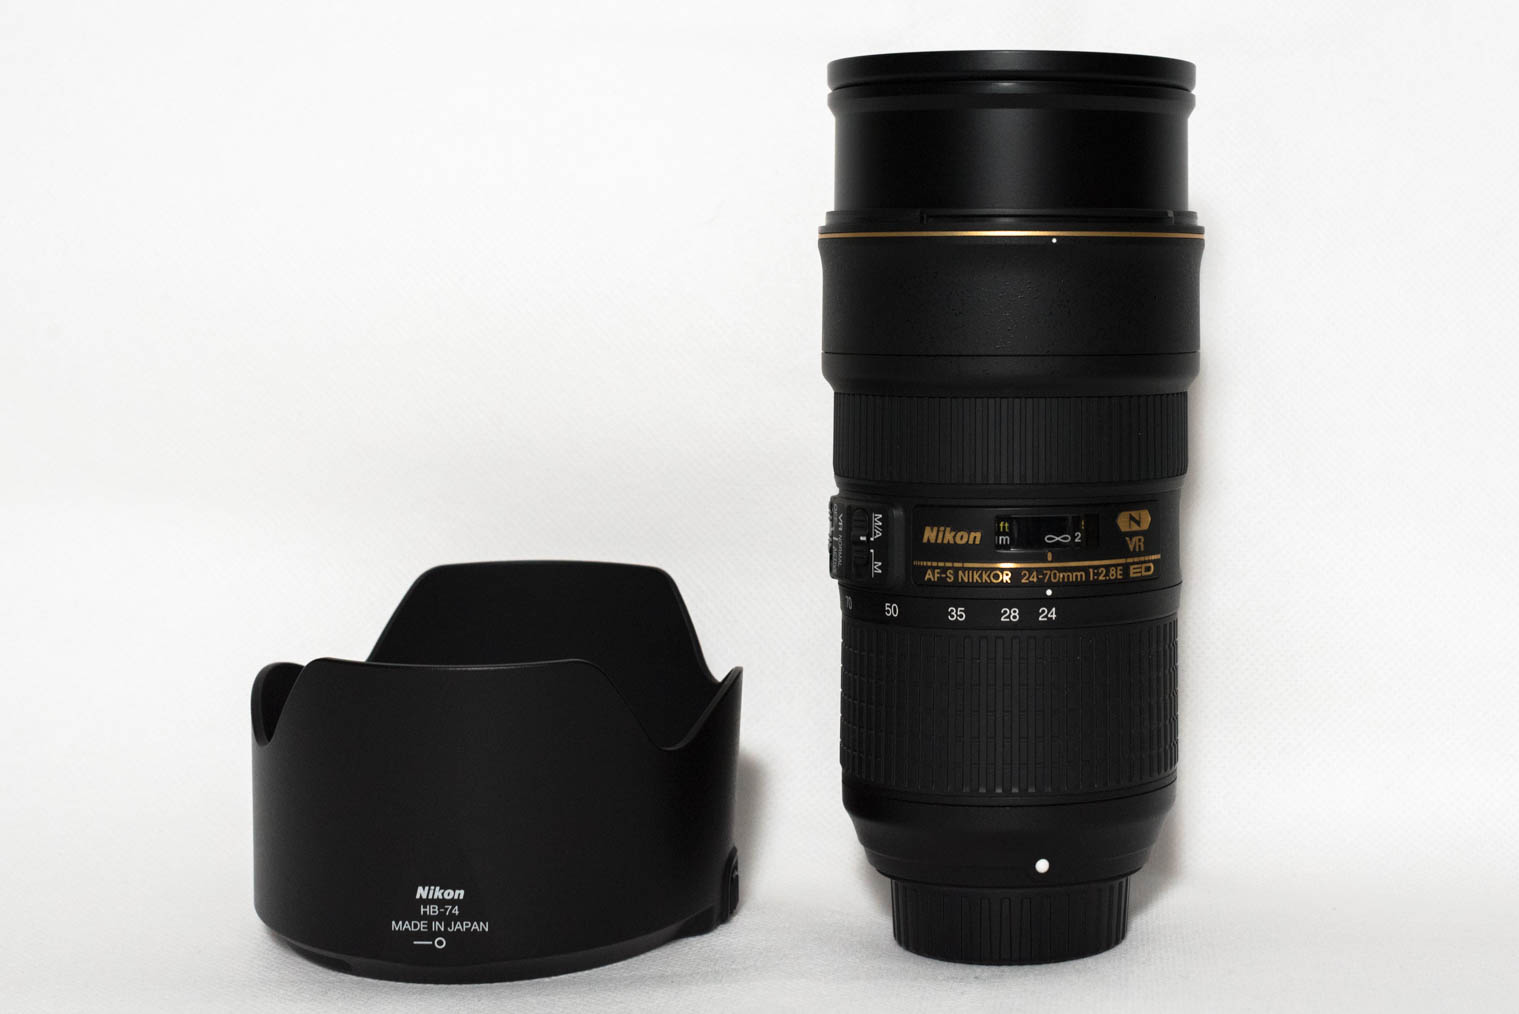 Nikon AF-S Nikkor 24-70 mm f/2.8 ED VR at 24 mm and the lens hood